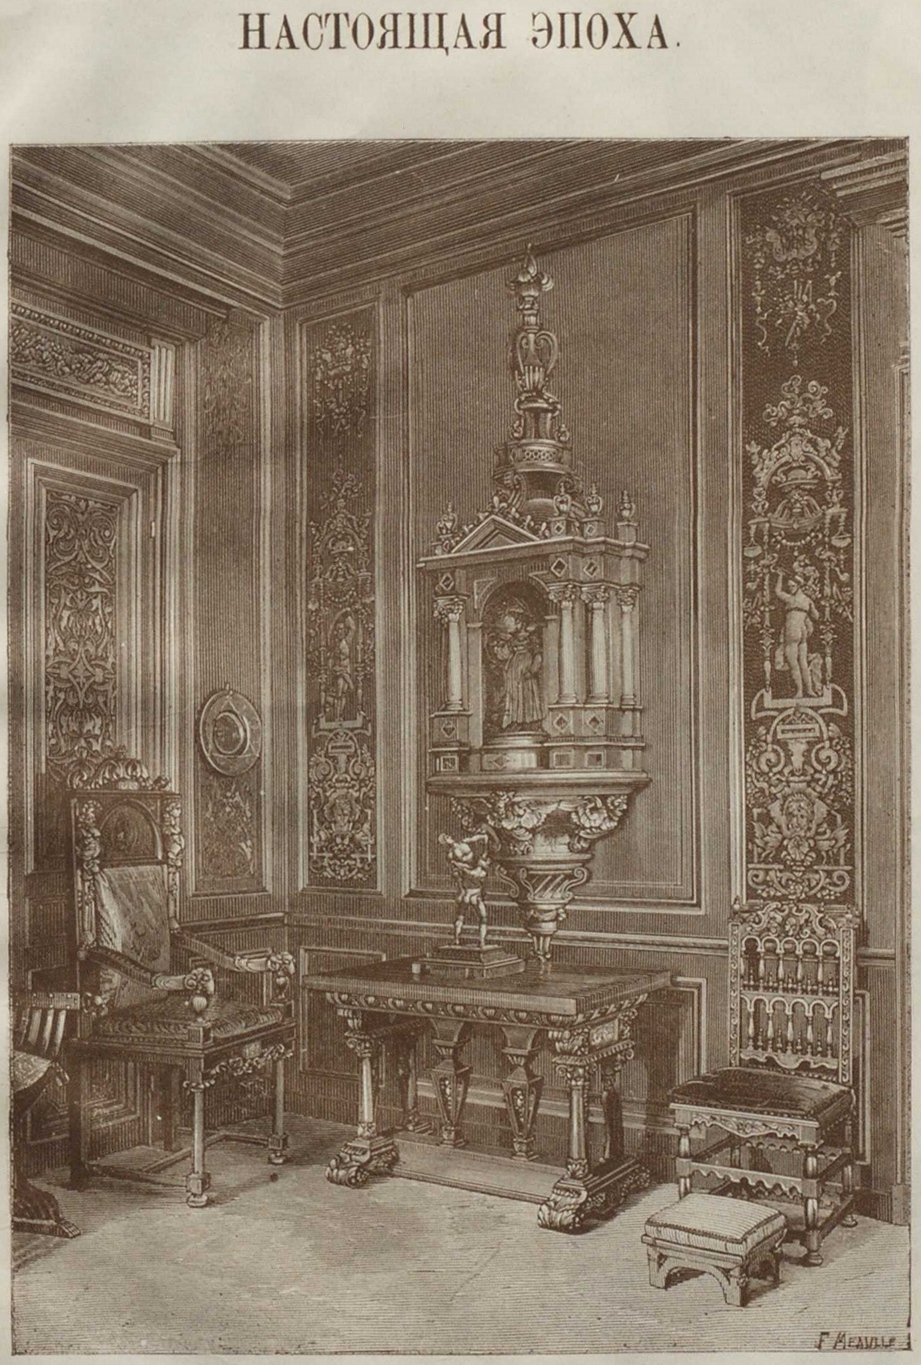 Рис. 131-й. Гостиная (salon) в стиле возрождения (Генриха II), работы известного фабриканта и декоратора в Париже А. Липпмана (рисунок —специально для альбома).